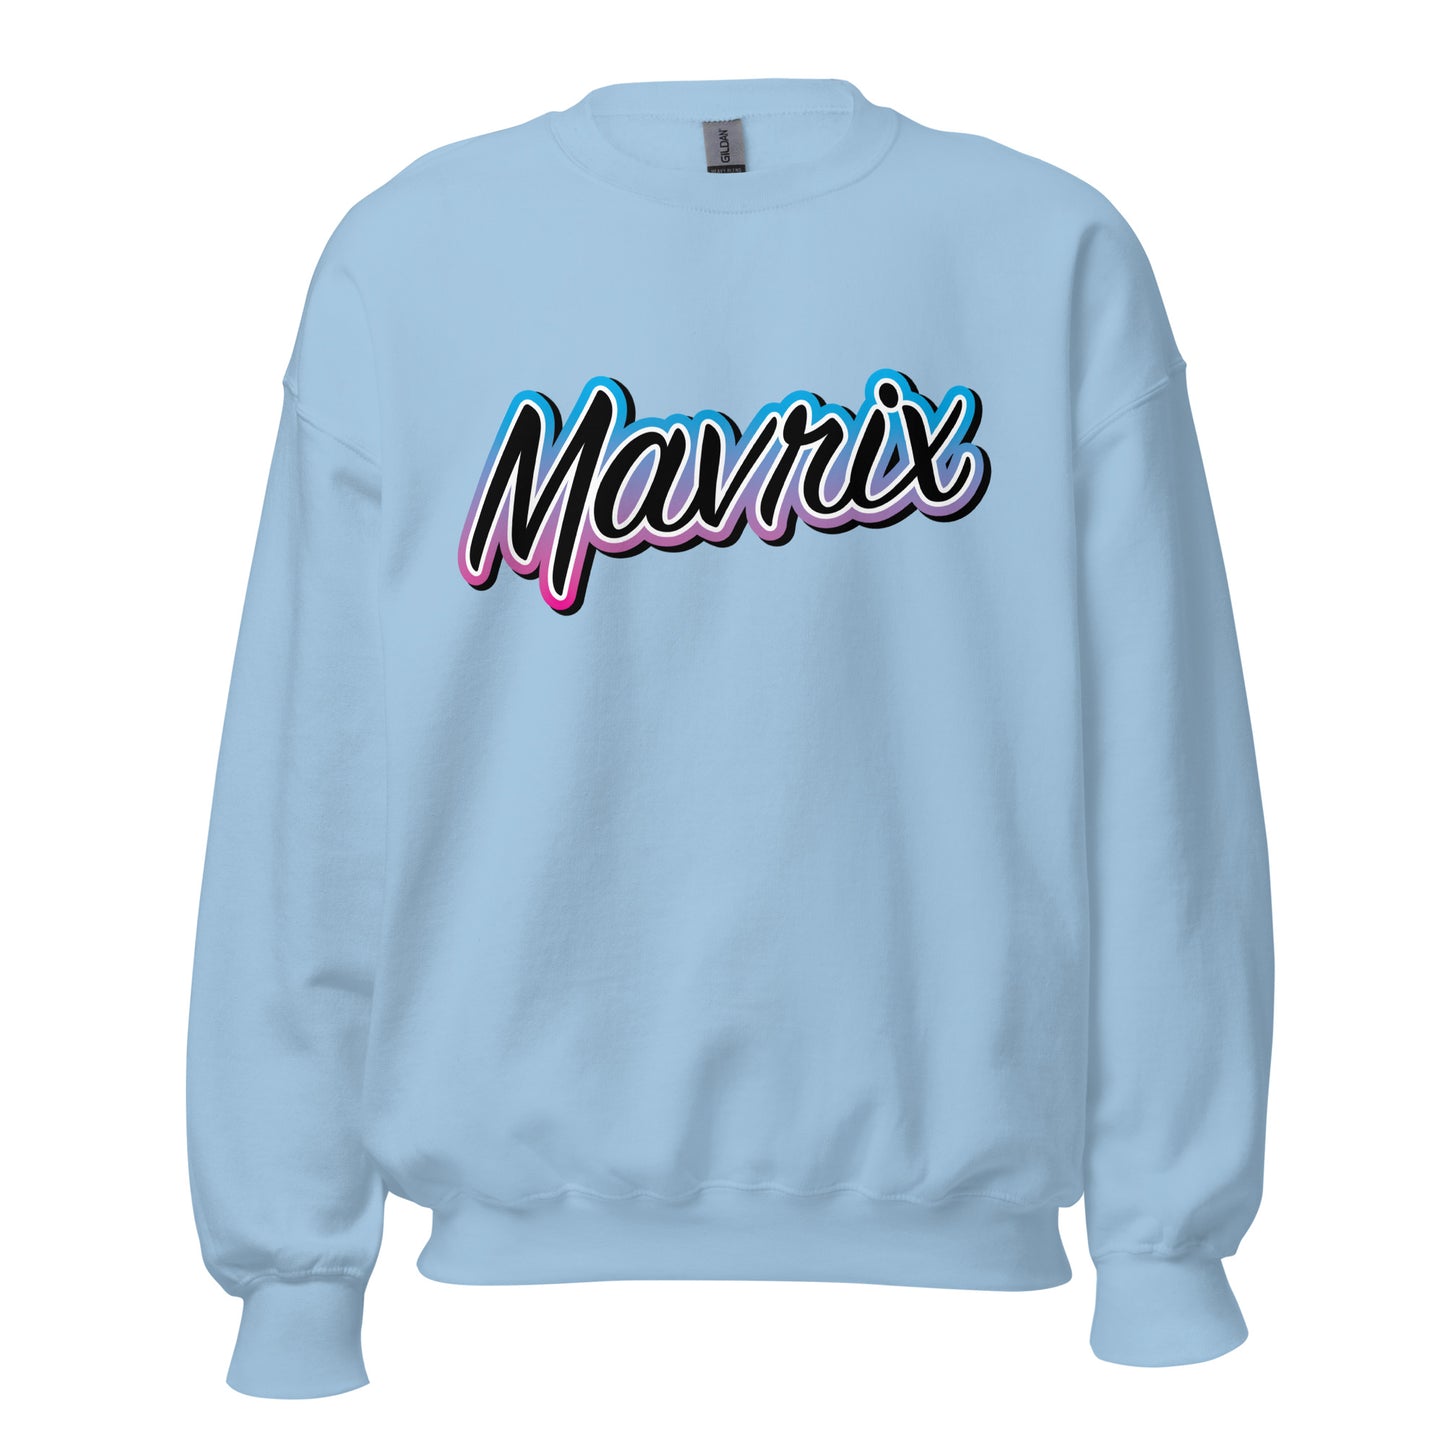 Mavrix Gradient Sweatshirt (6 colors)